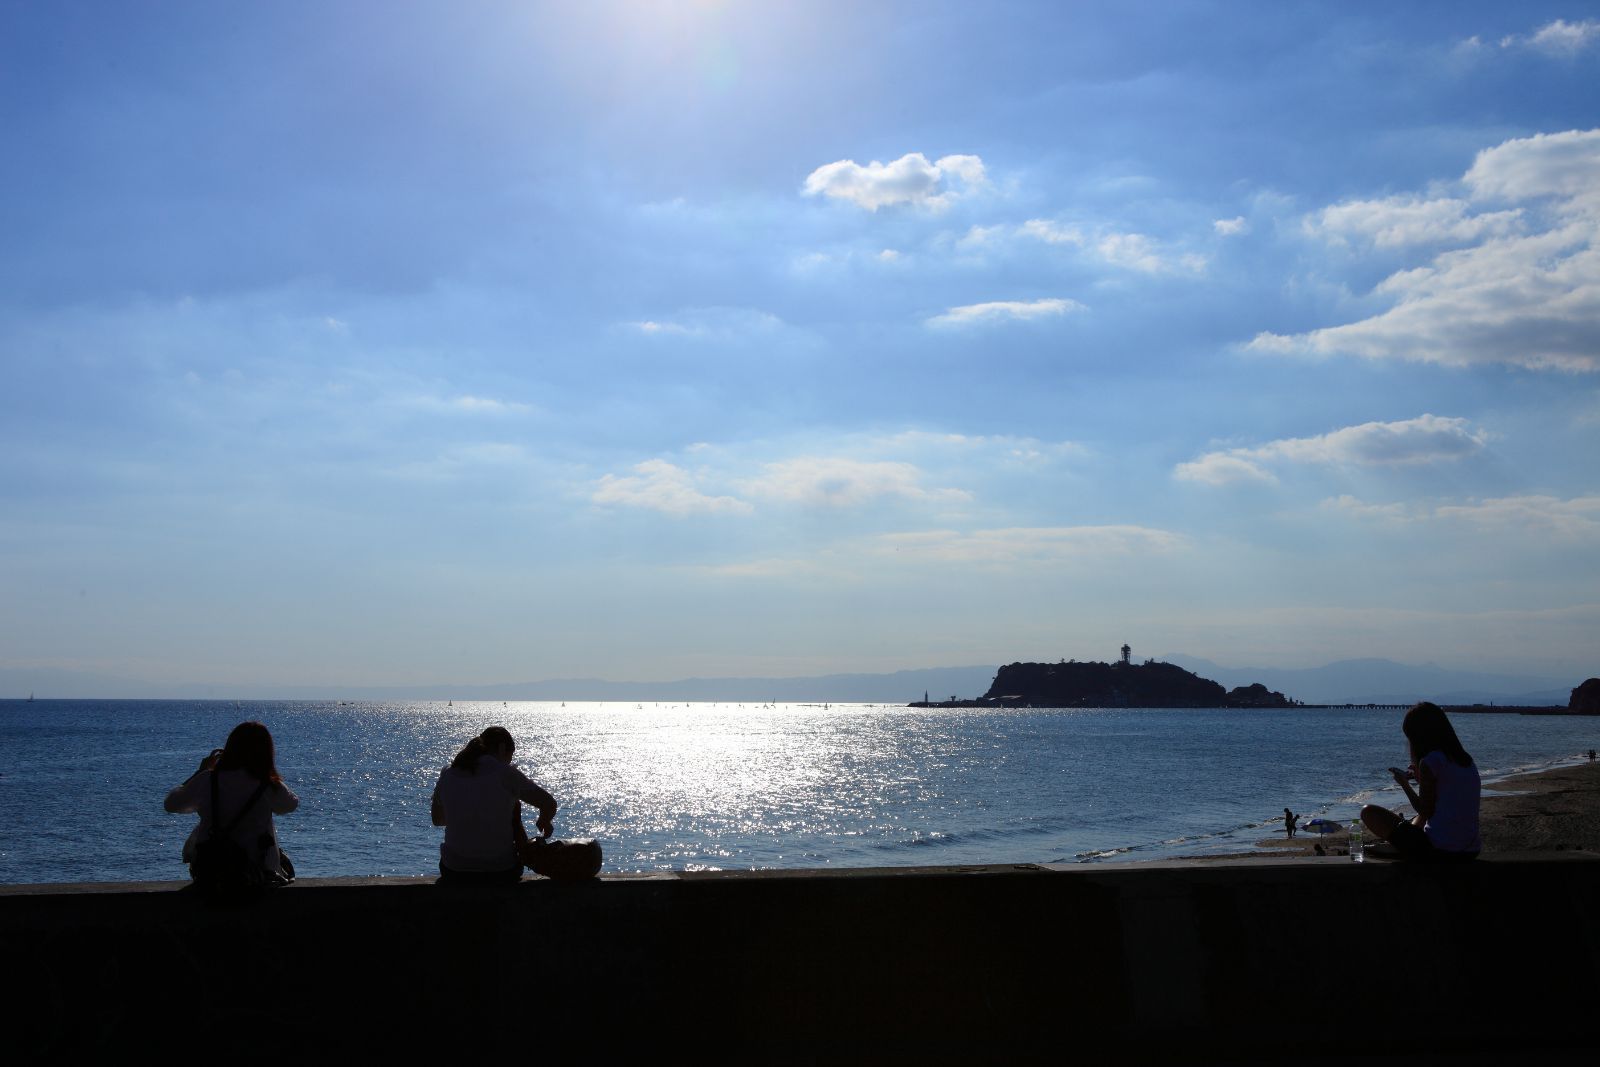 携程攻略 镰仓市湘南海岸景点 夕阳下的湘南海岸是最美的 平静的海面在余晖中波光粼粼 闪烁着耀眼